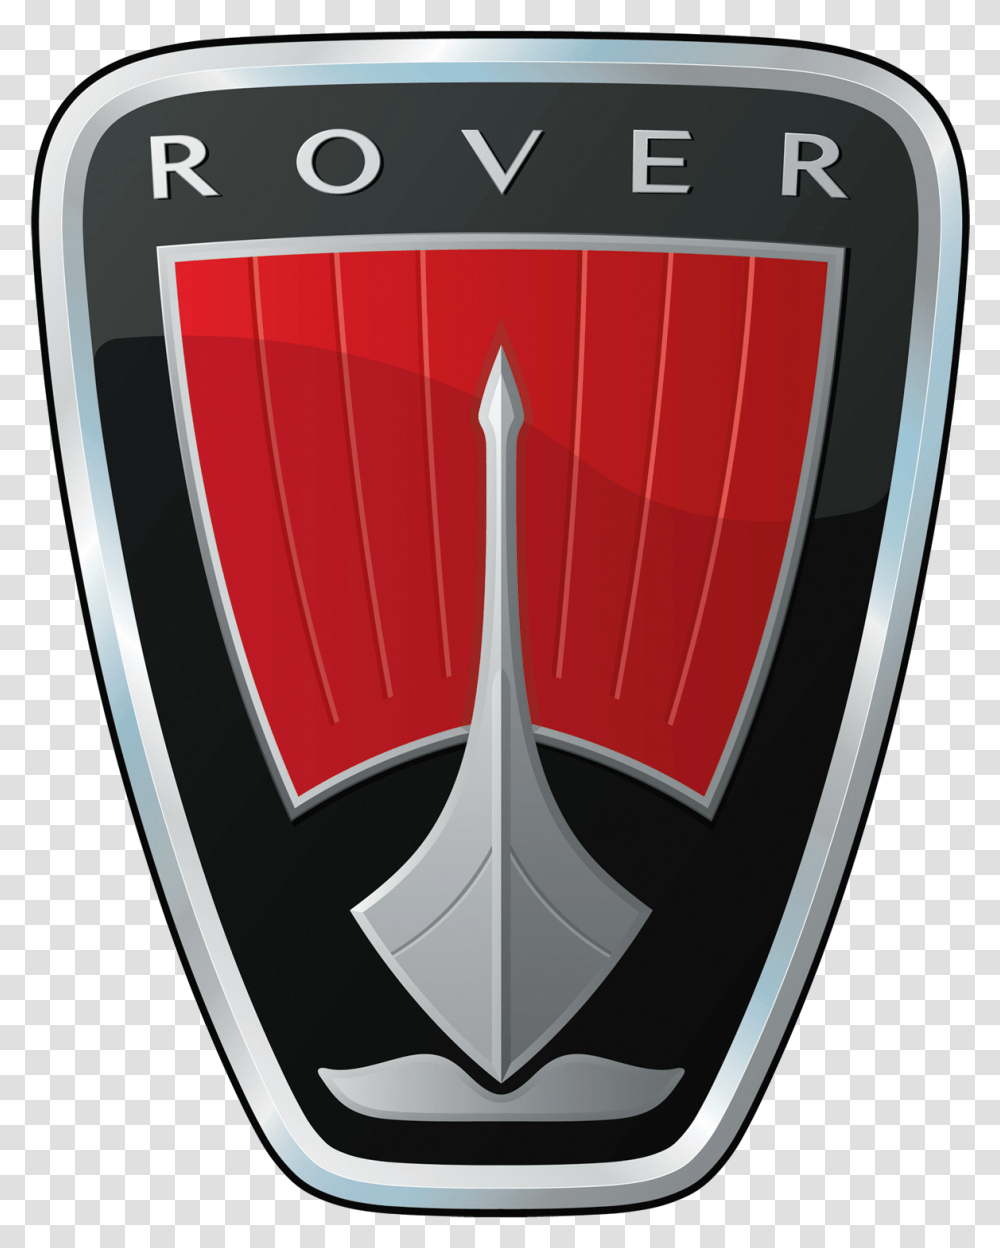 Rover Logo Car Symbol Meaning Rover Car Logo, Shield, Armor Transparent Png